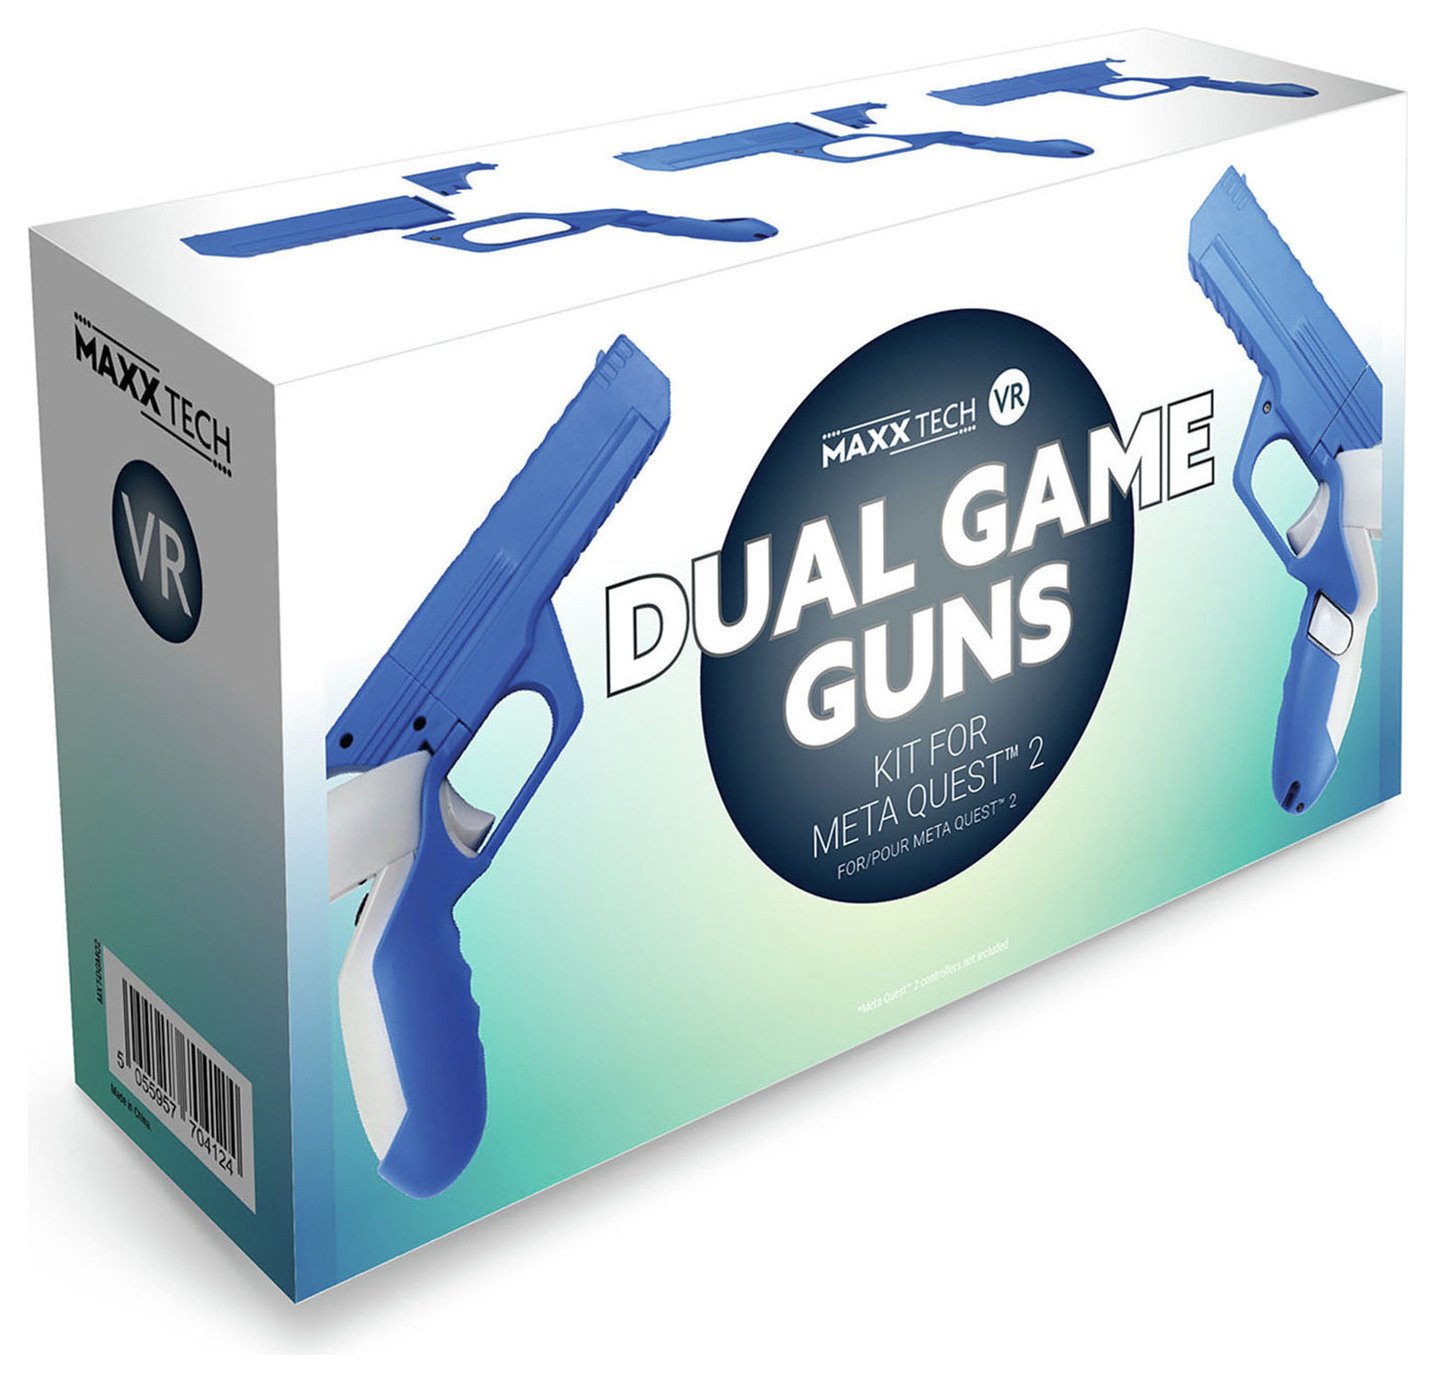 Maxx Tech VR Dual Game Guns Kit For Meta Quest 2